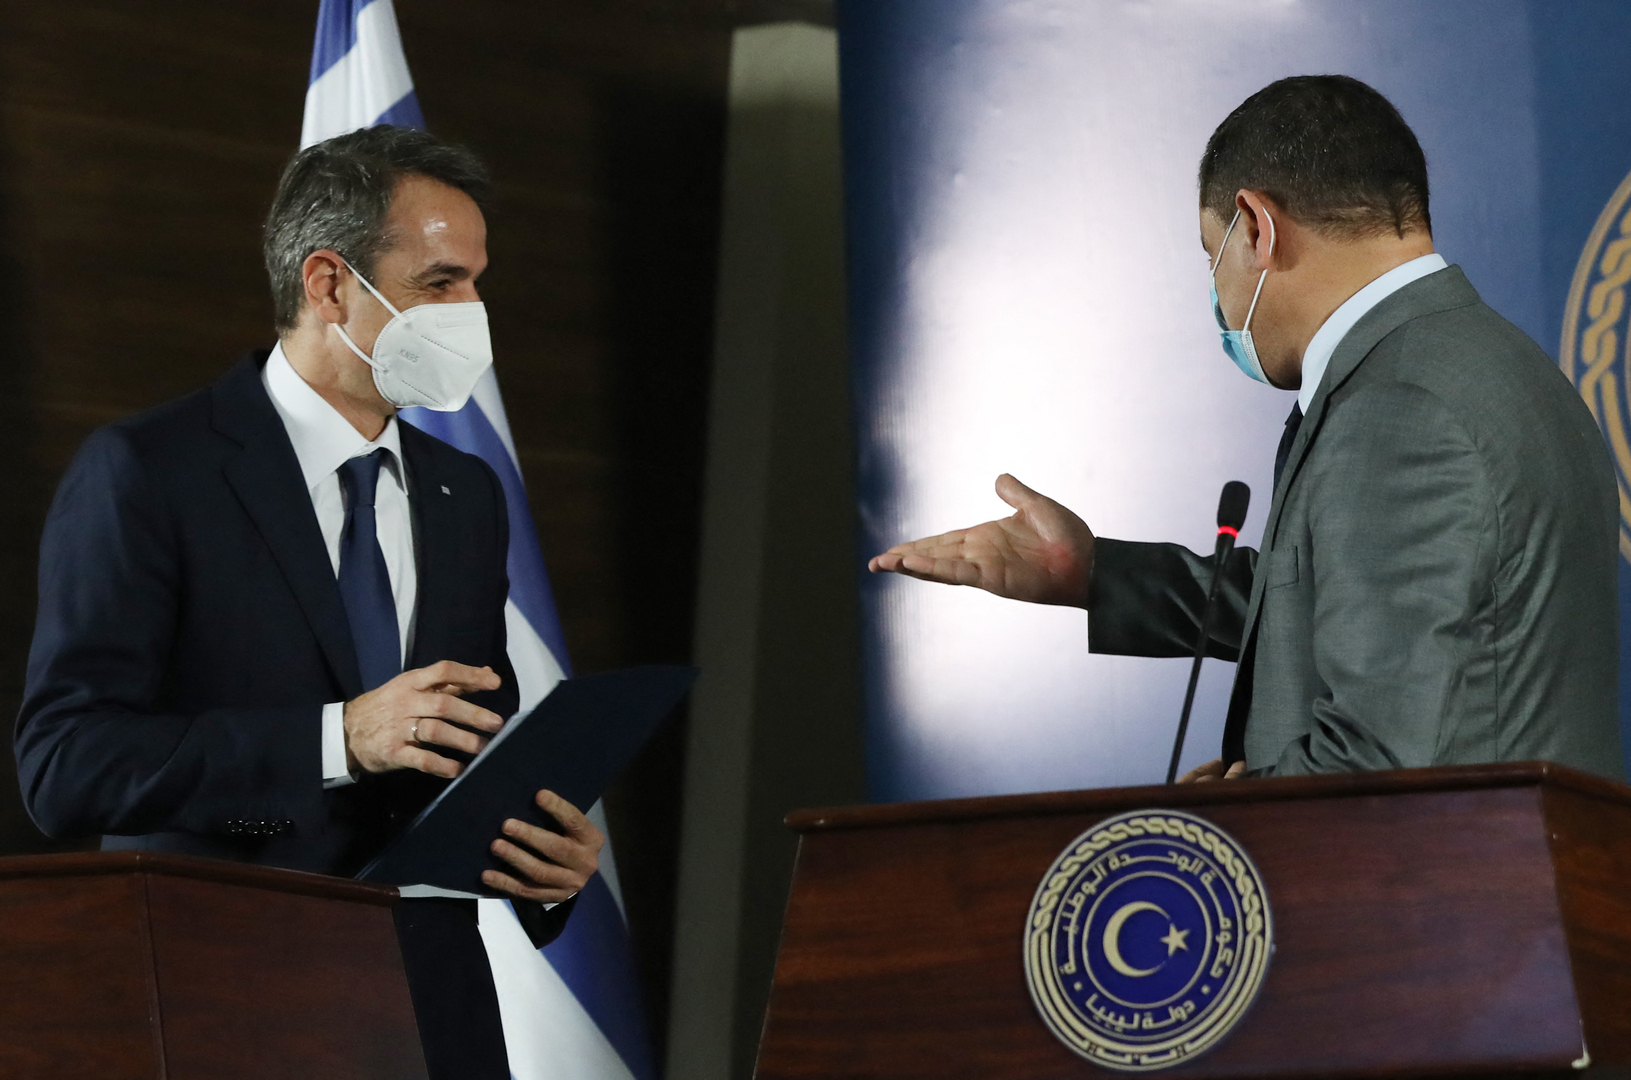 اليونان تعلن عن اتفاق على استئناف محادثات ترسيم حدود المناطق البحرية مع ليبيا فورا